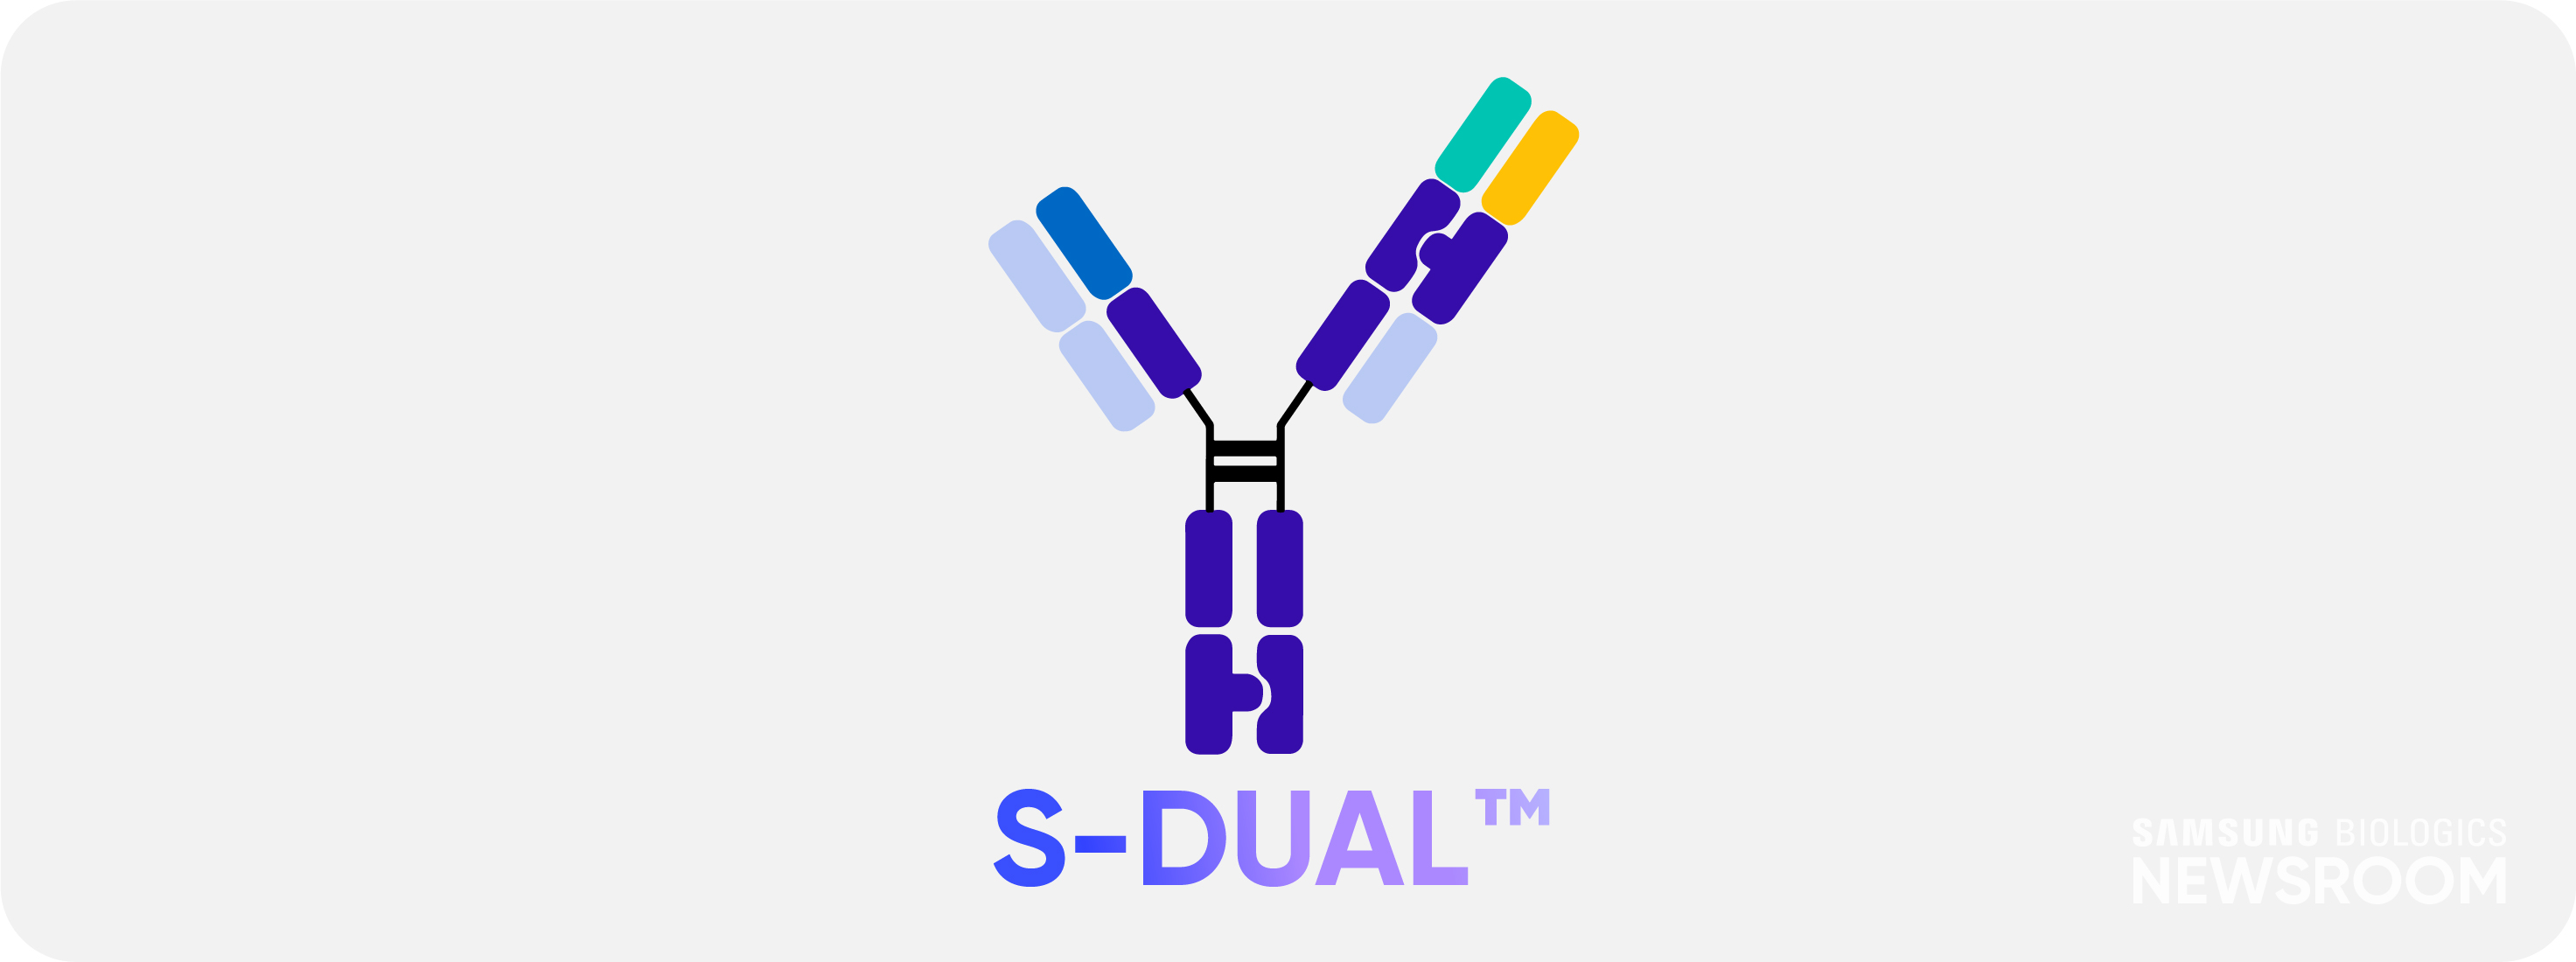  삼성바이오로직스 차세대 이중항체 플랫폼 S-DUALTM